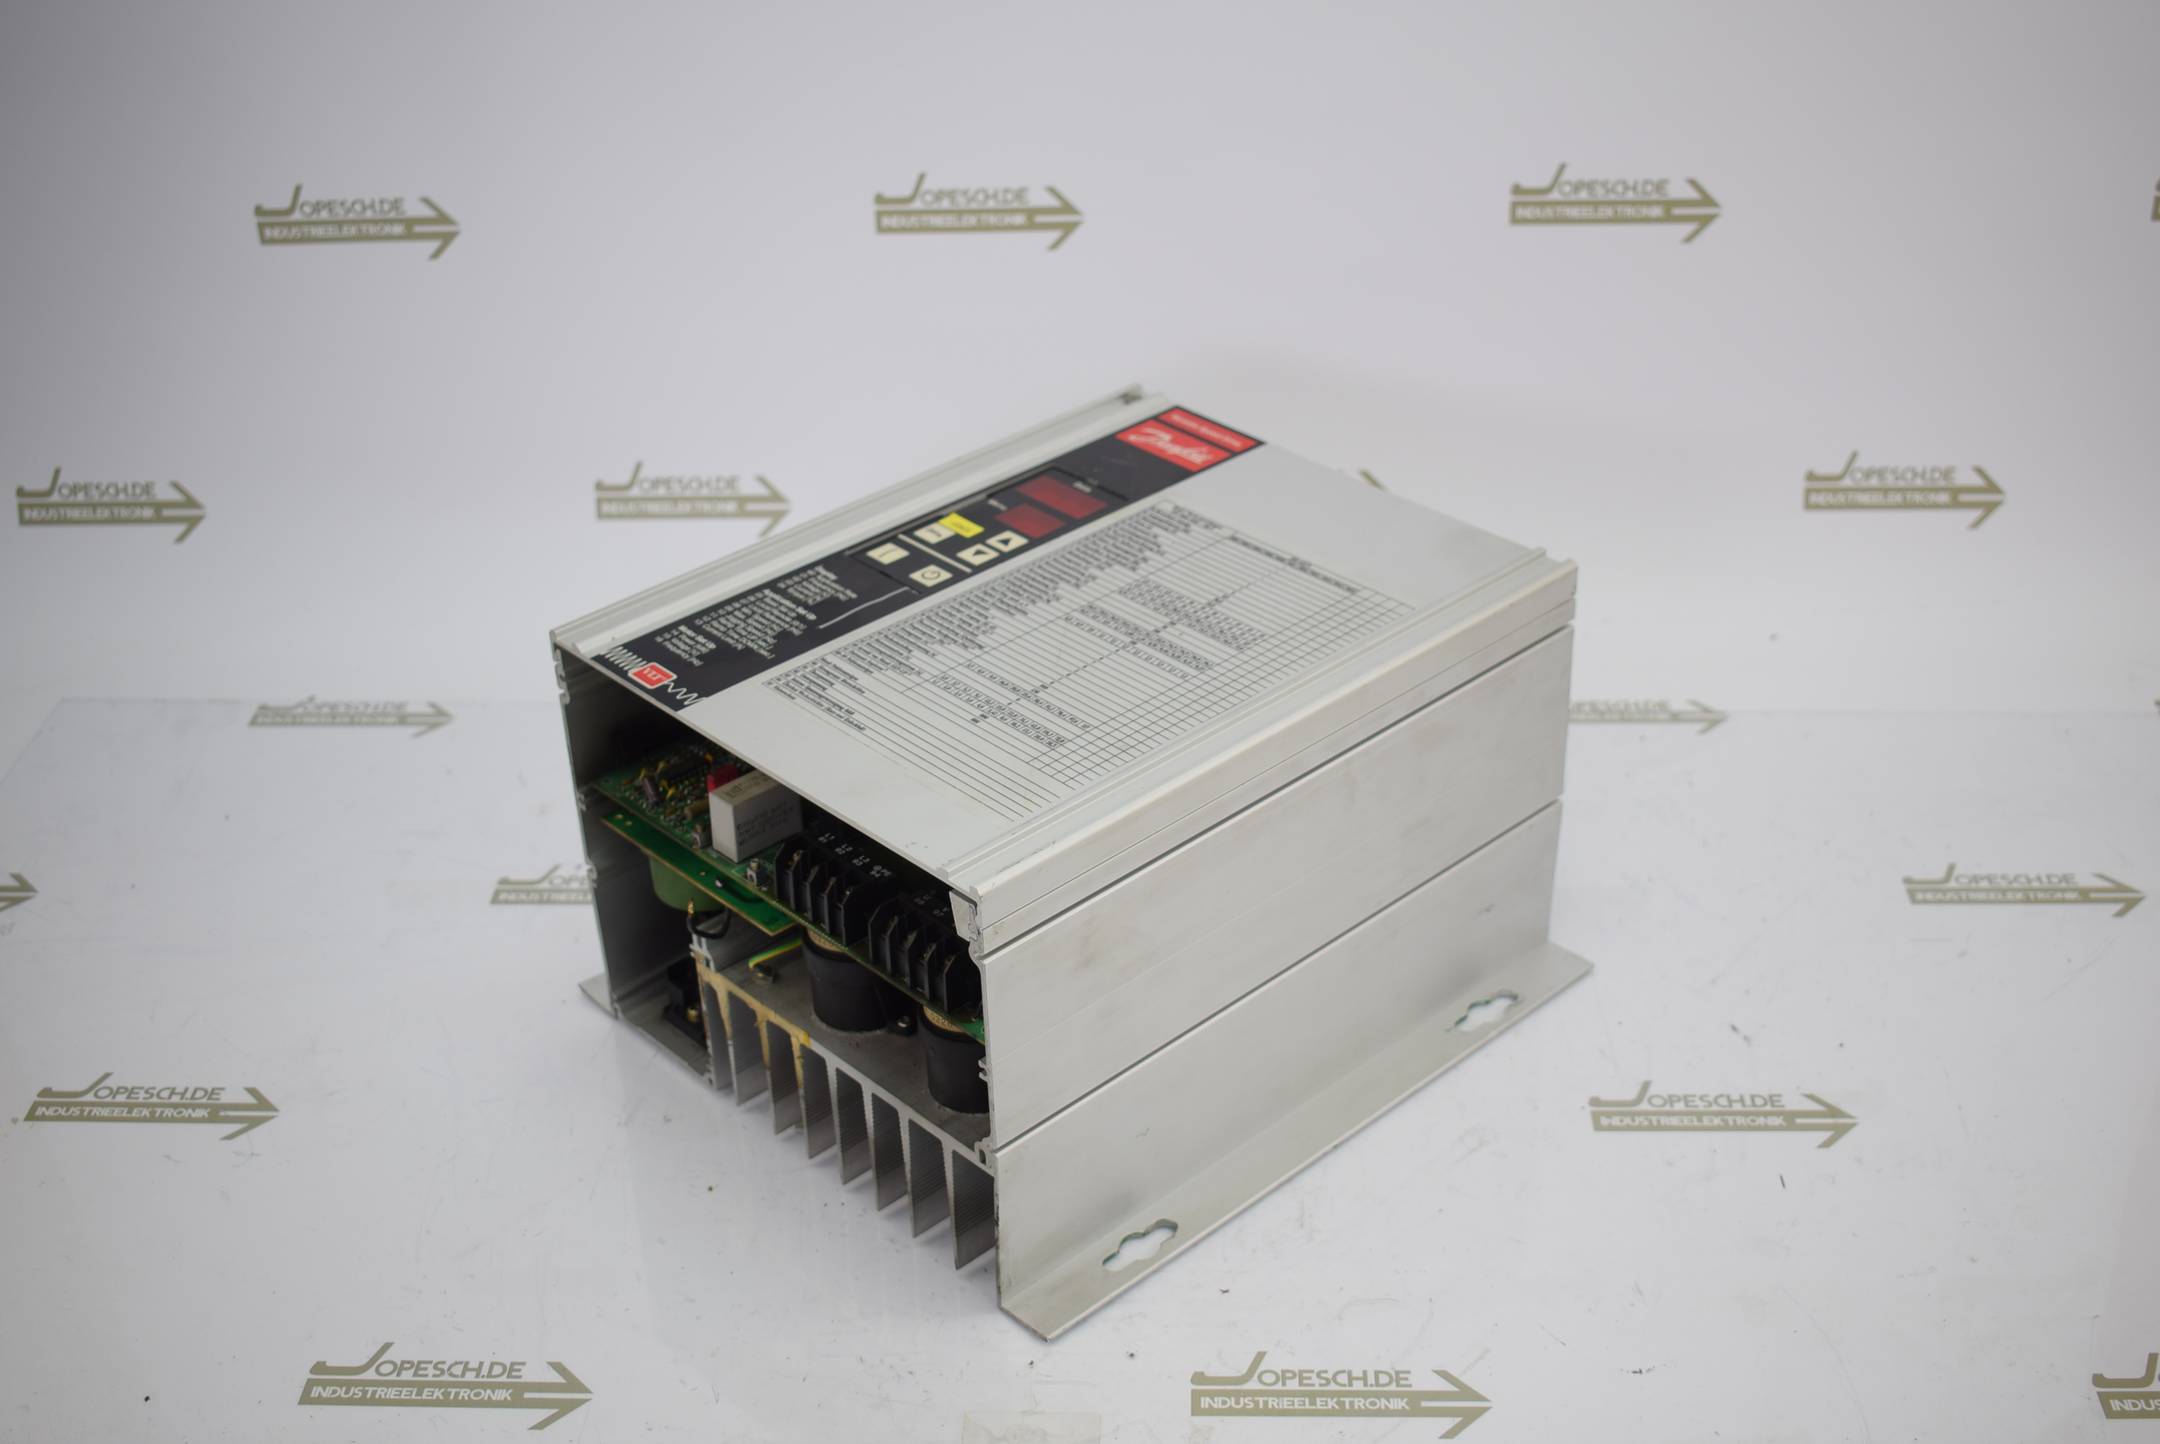 Danfoss VLT Type 3004 Variable Speed Drive Frequenzumrichter 175H1002 380-415V